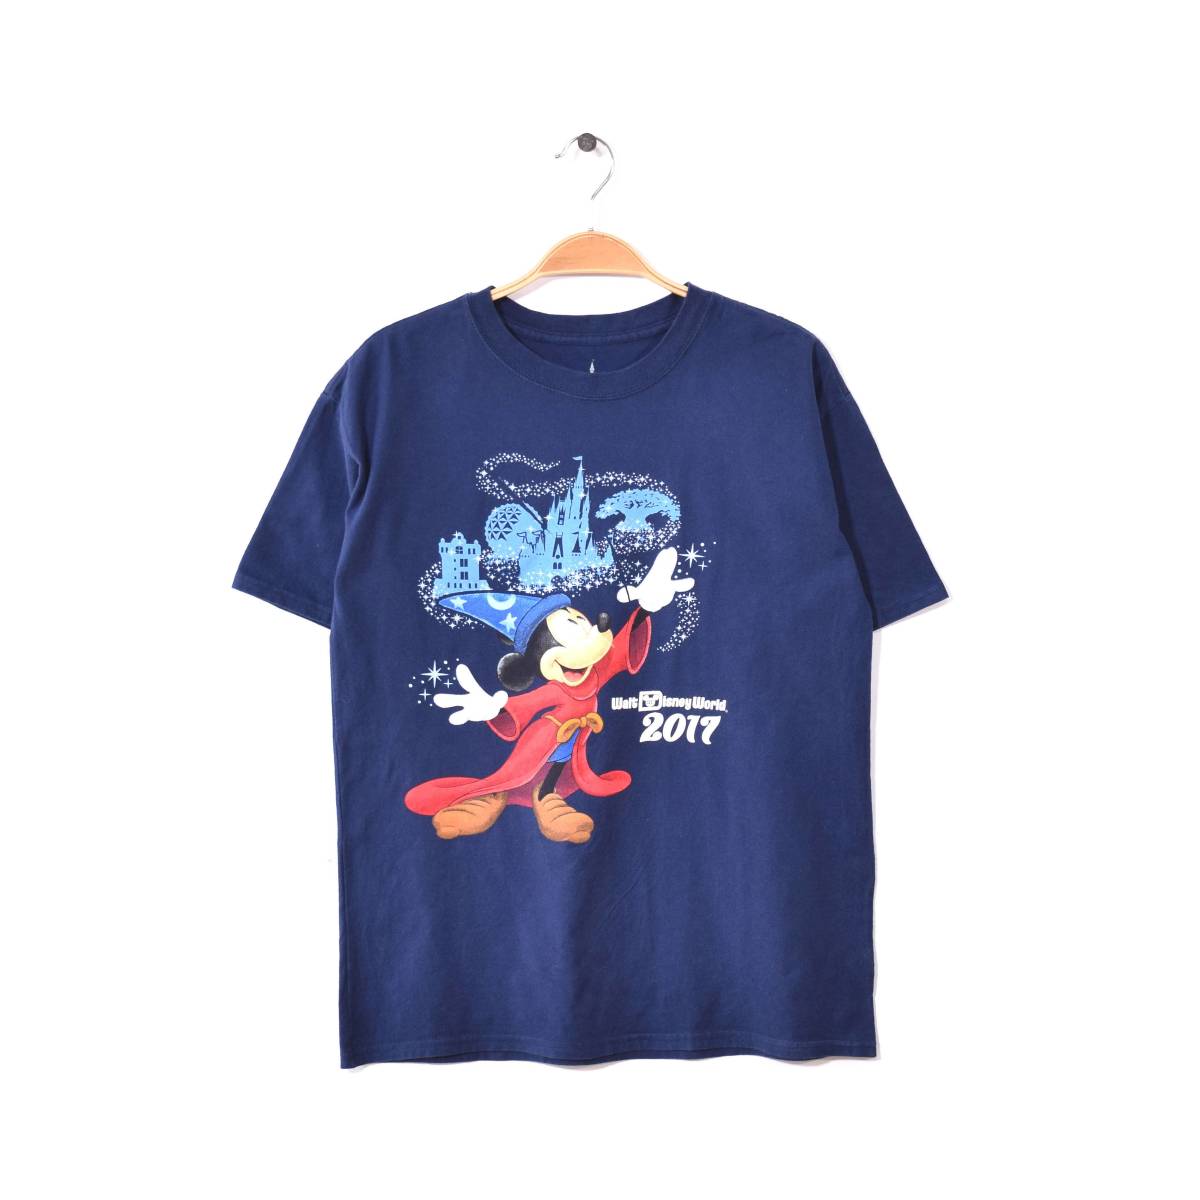 【送料無料】ディズニー ミッキーマウス ファンタジア クルーネック Tシャツ メンズS相当 Disney アメカジ ディズニーランド 古着 BB0458